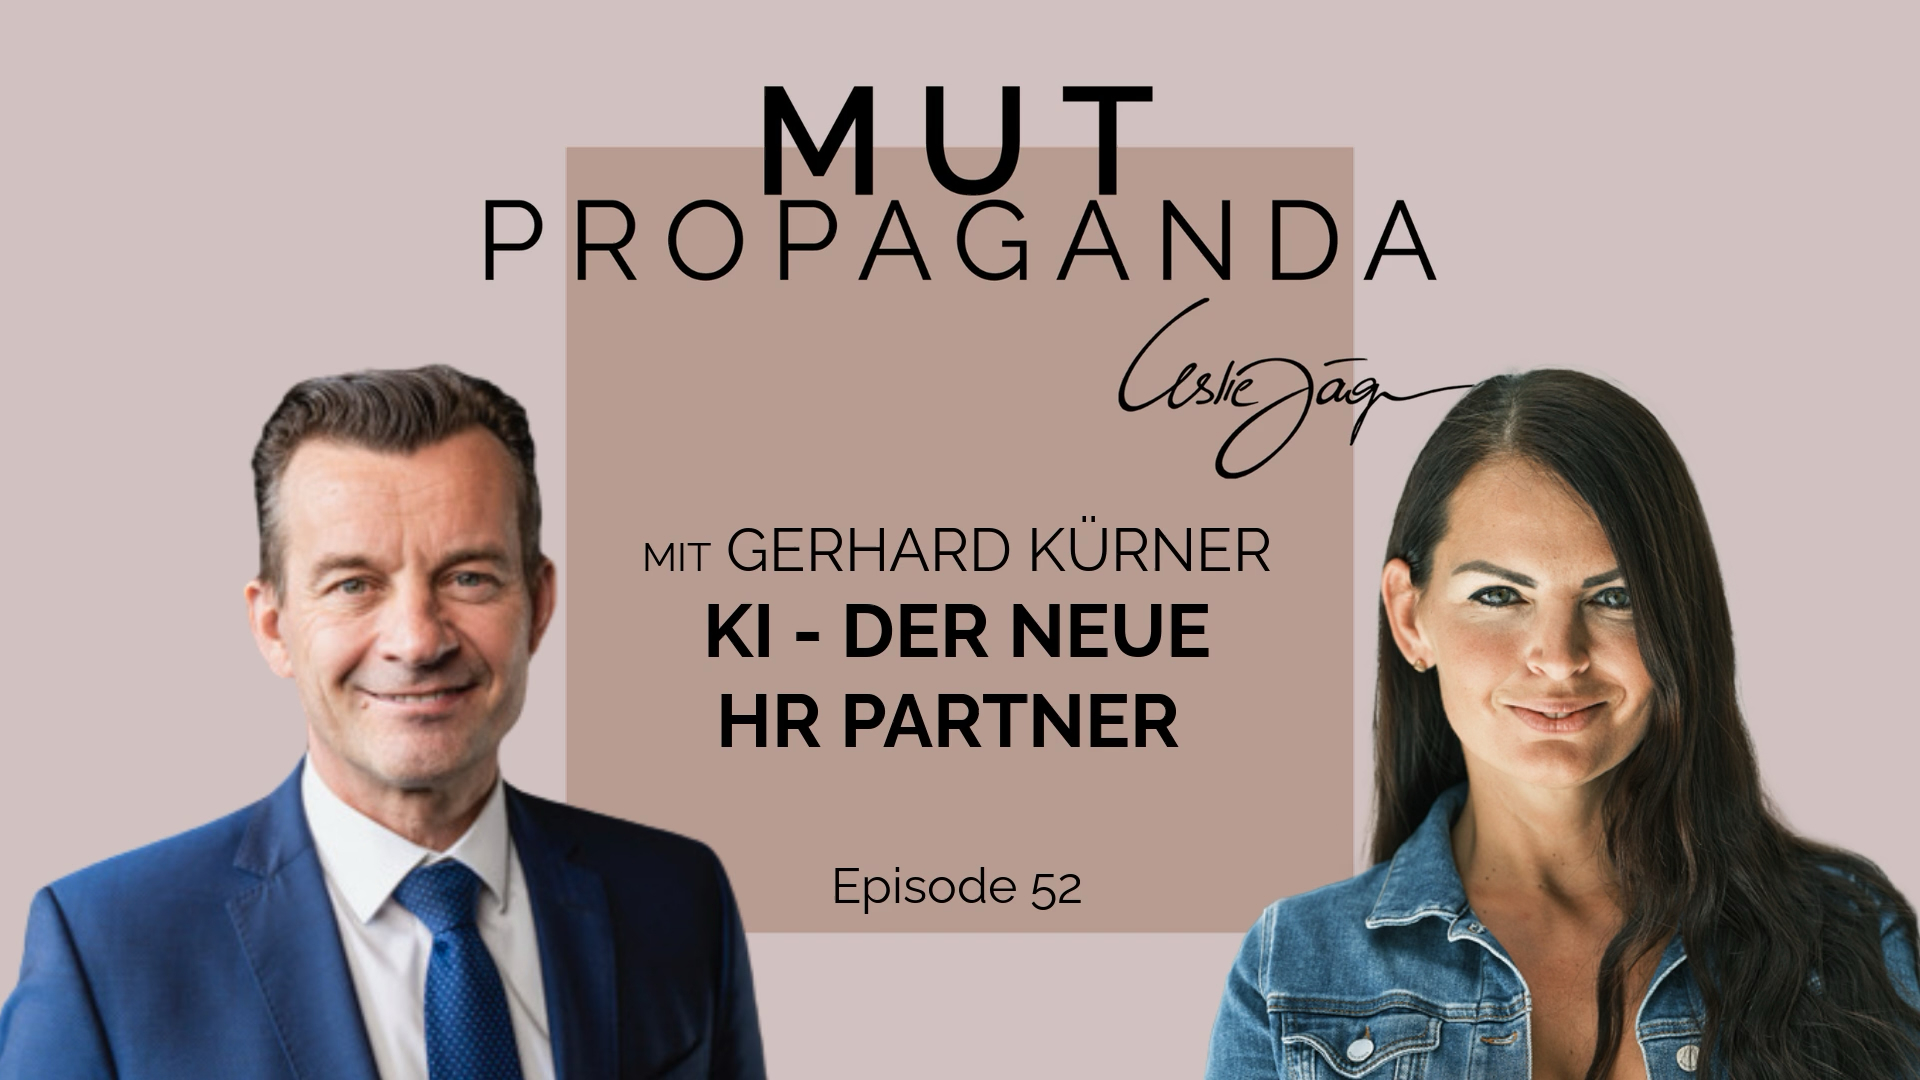 KI, der neue HR Partner – im Interview mit Gerhard Kürner